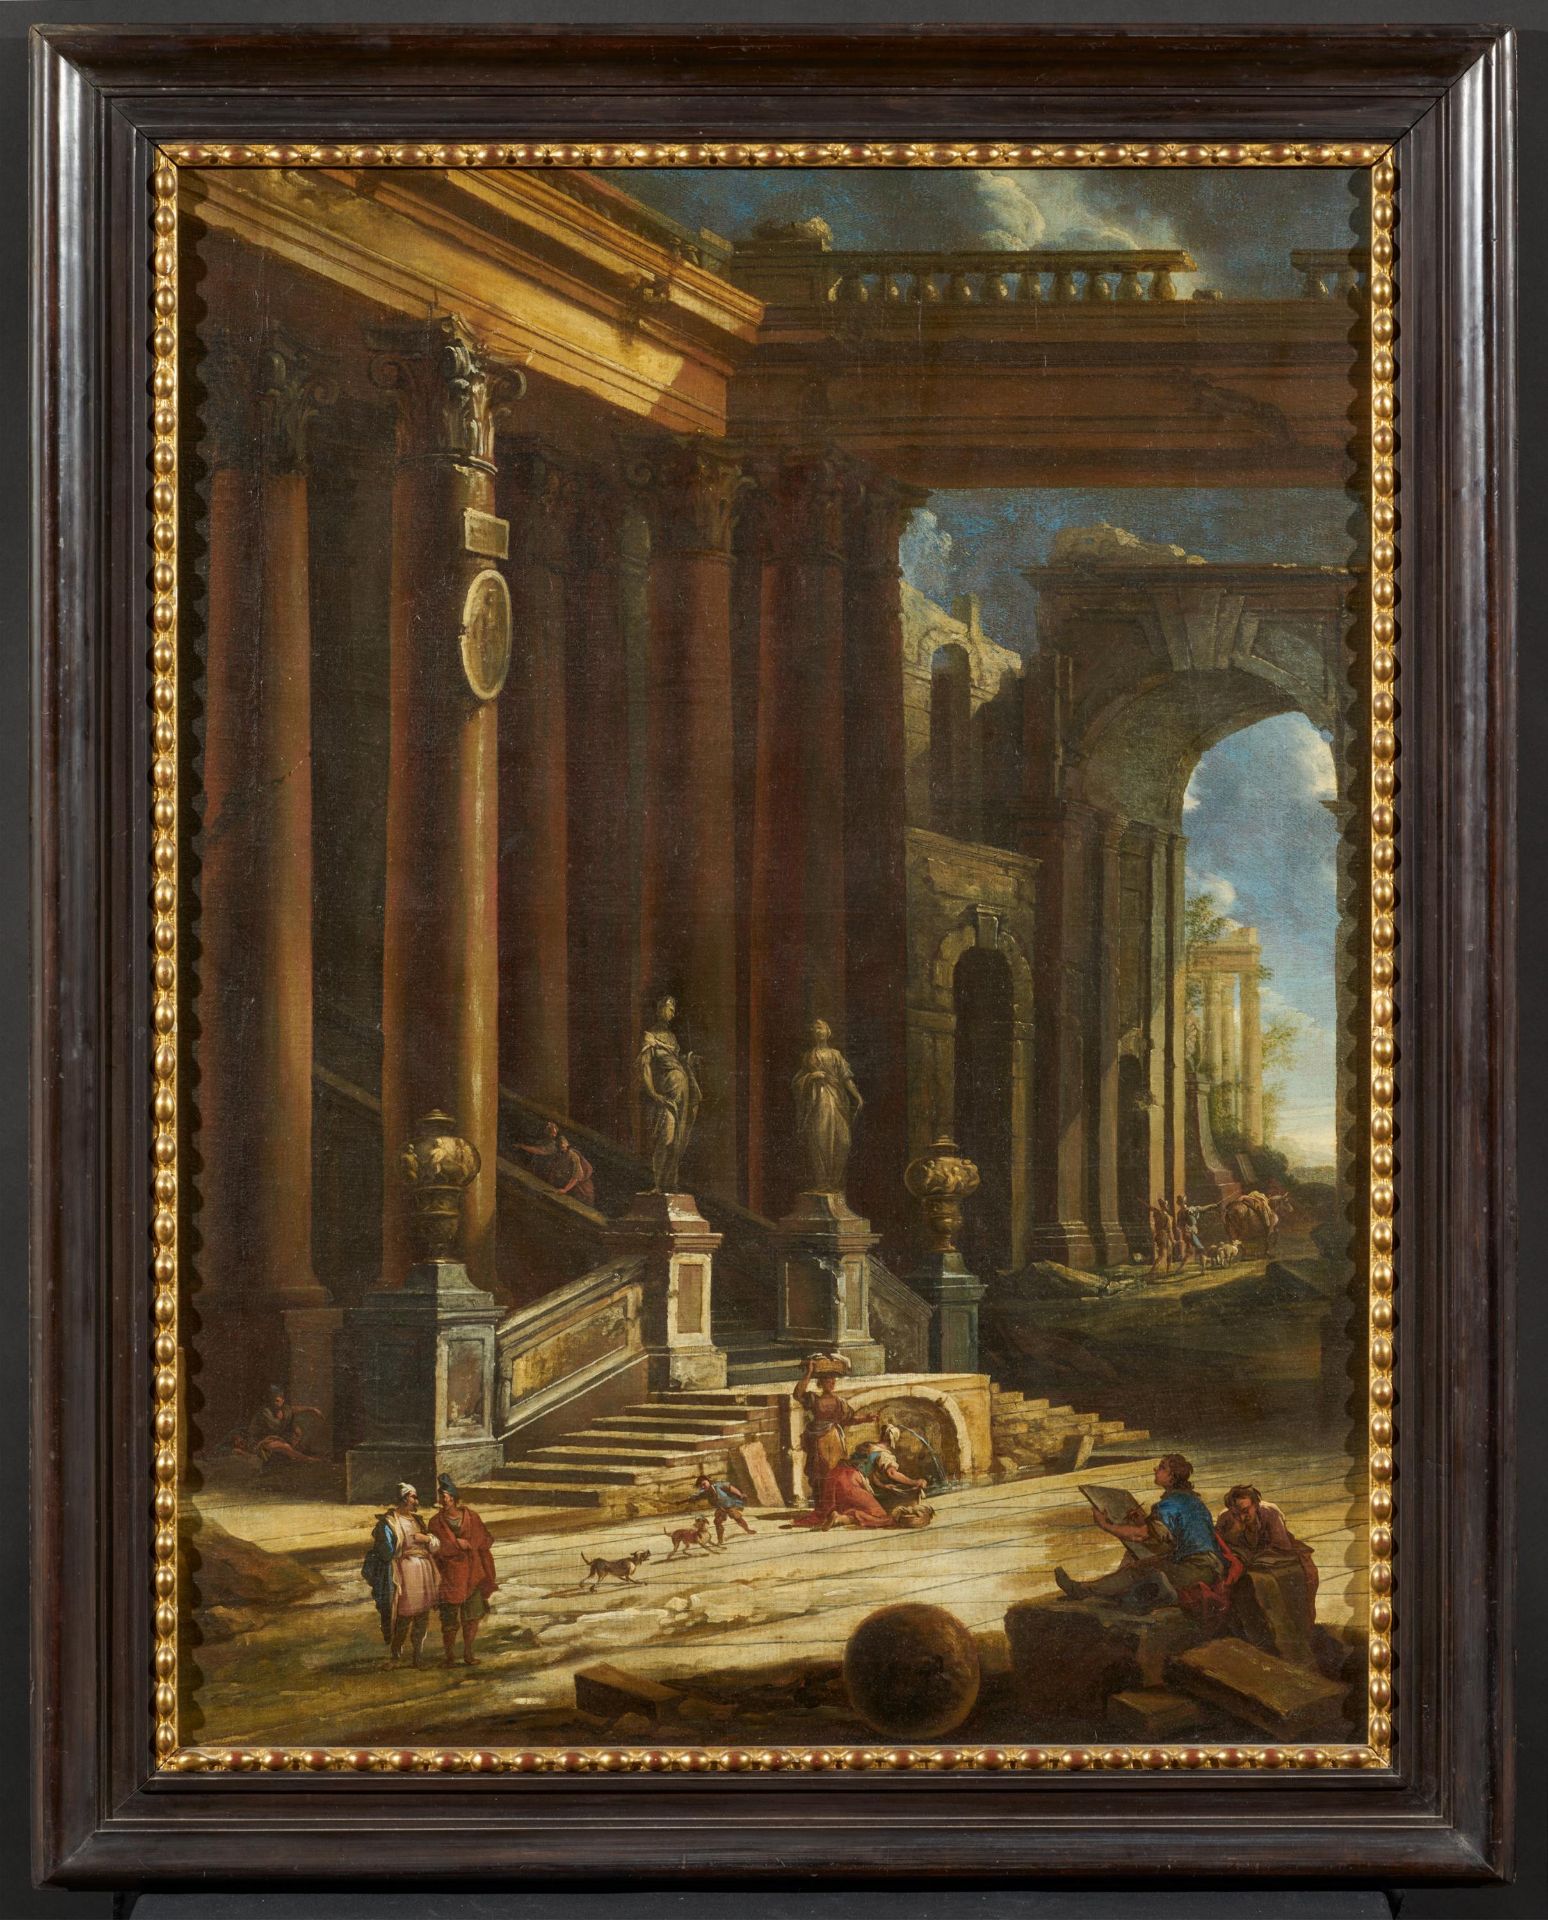 Pietro Cappelli Naples 1700 ca. - 1724 (or 1734) ca.: Capriccio with Architecture and Figures - Image 2 of 4